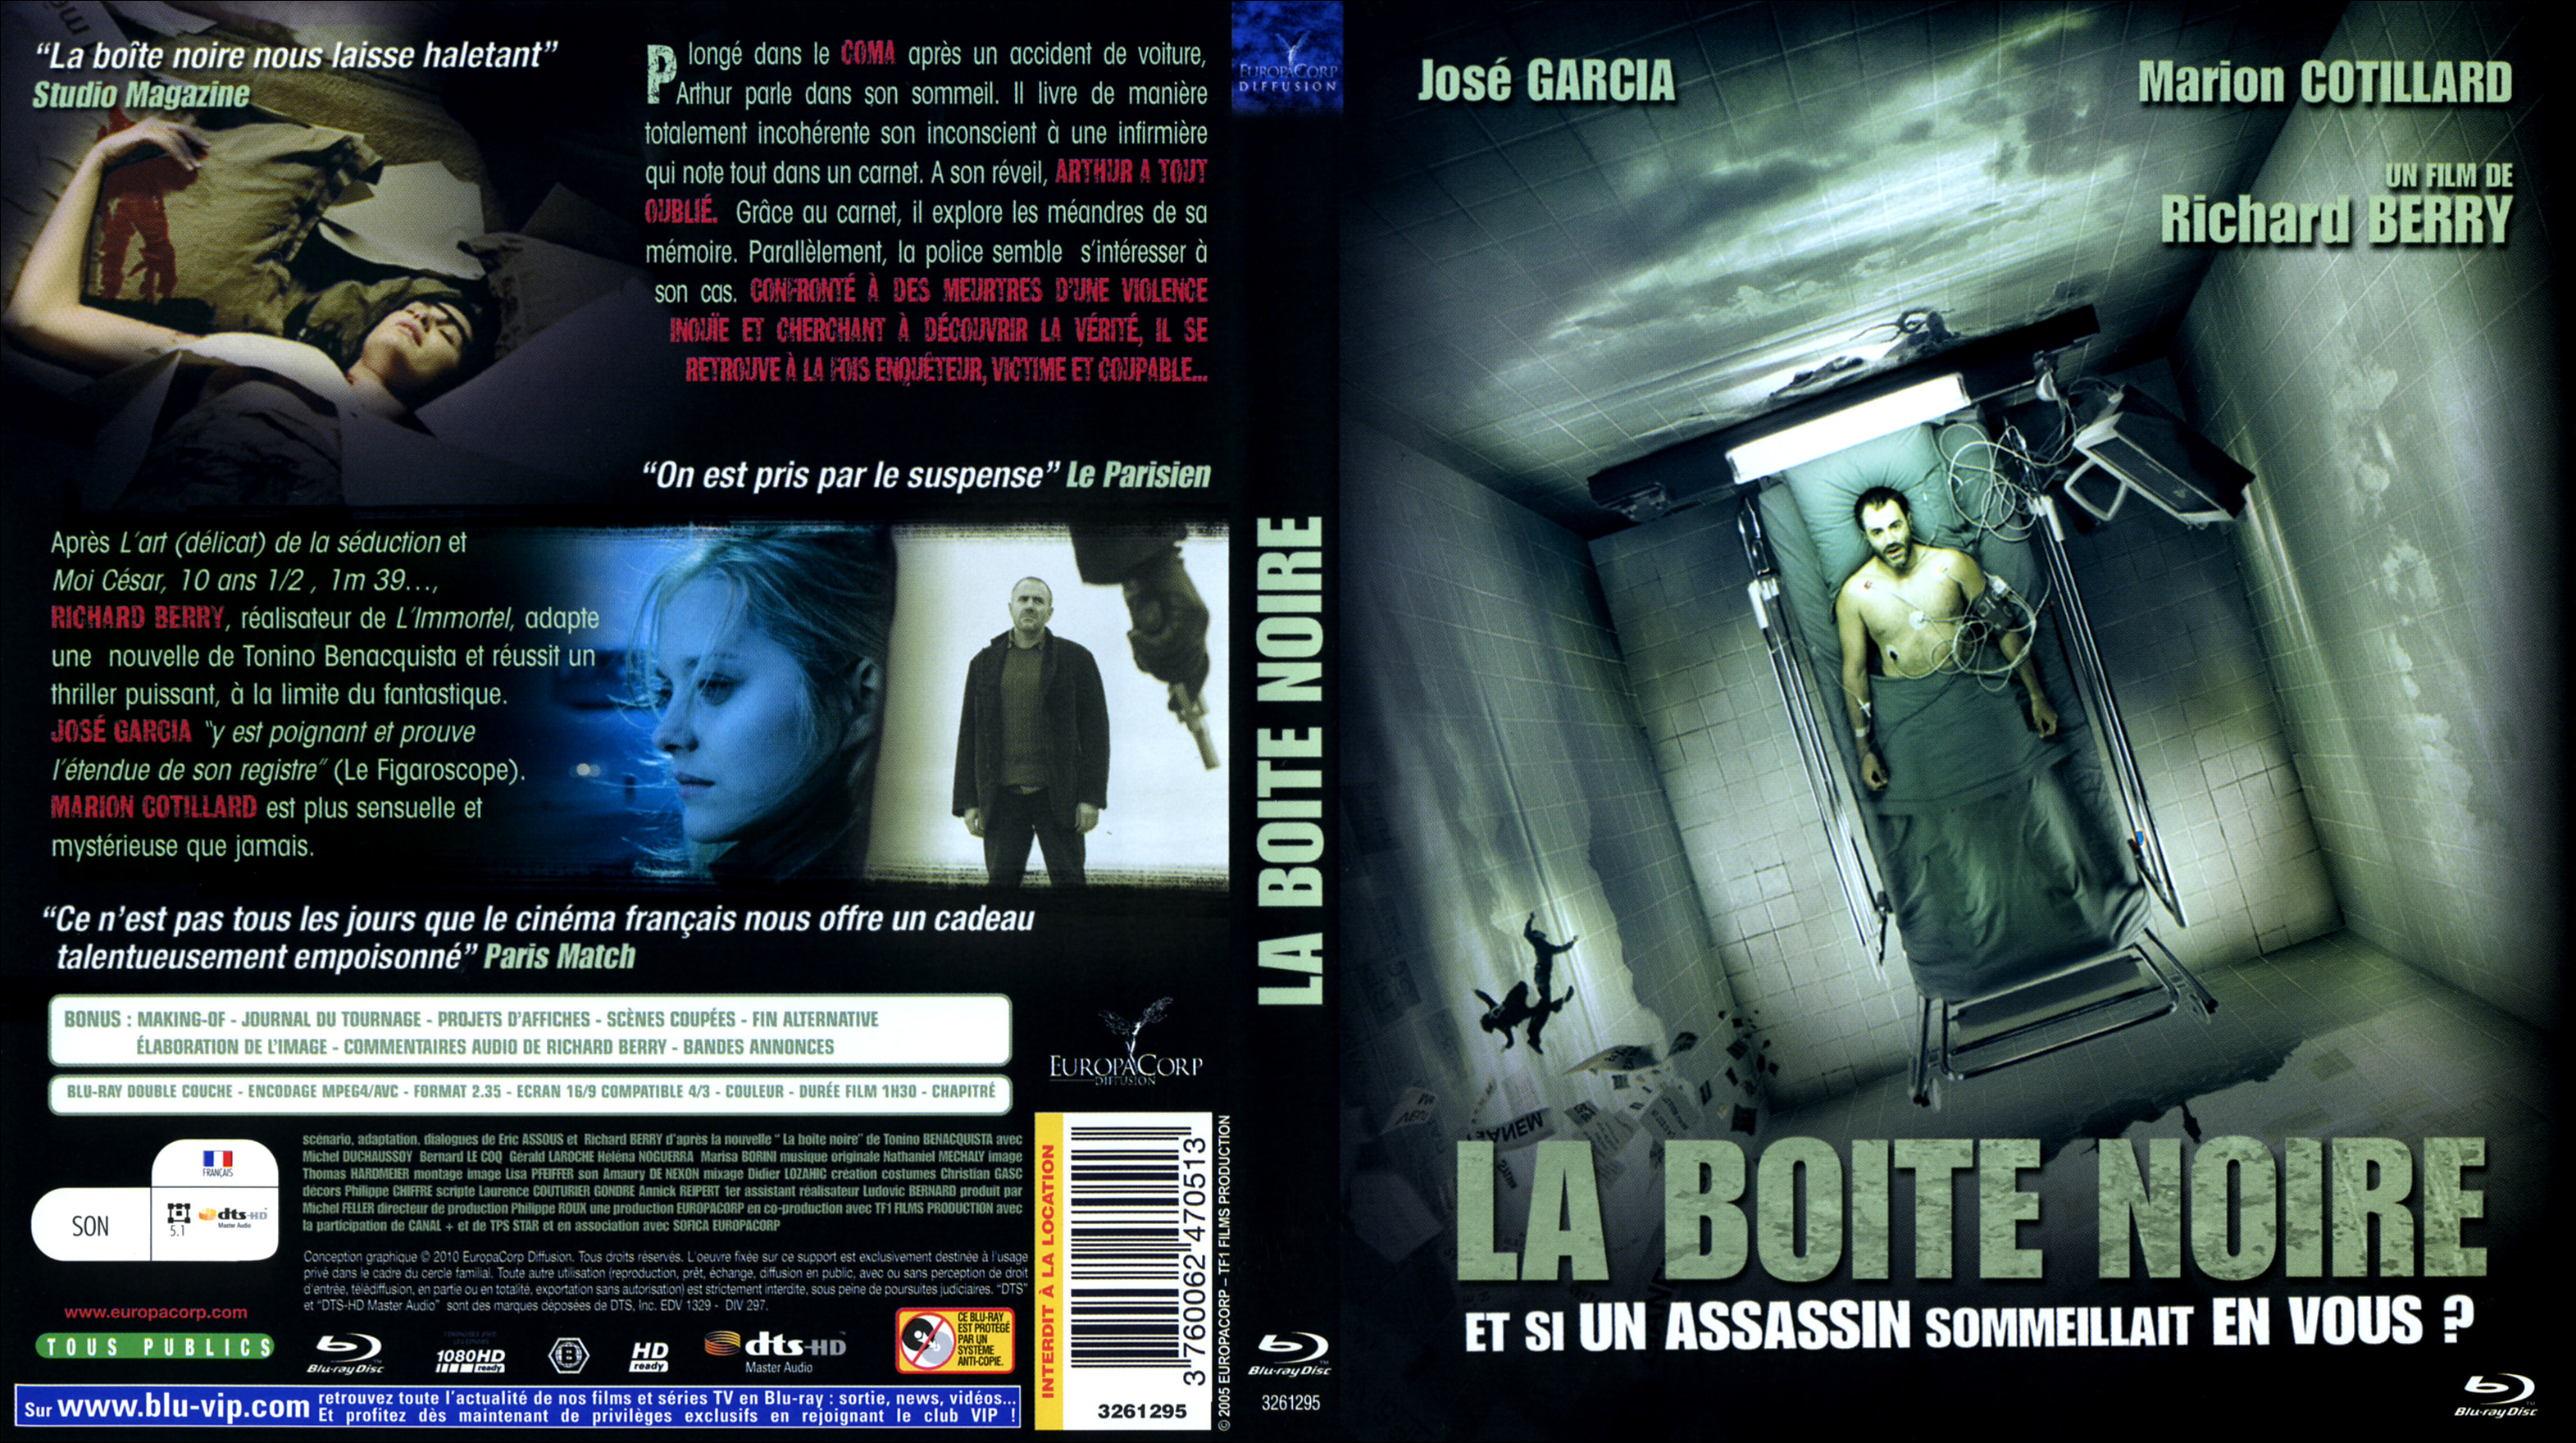 Jaquette DVD La boite noire (BLU-RAY)